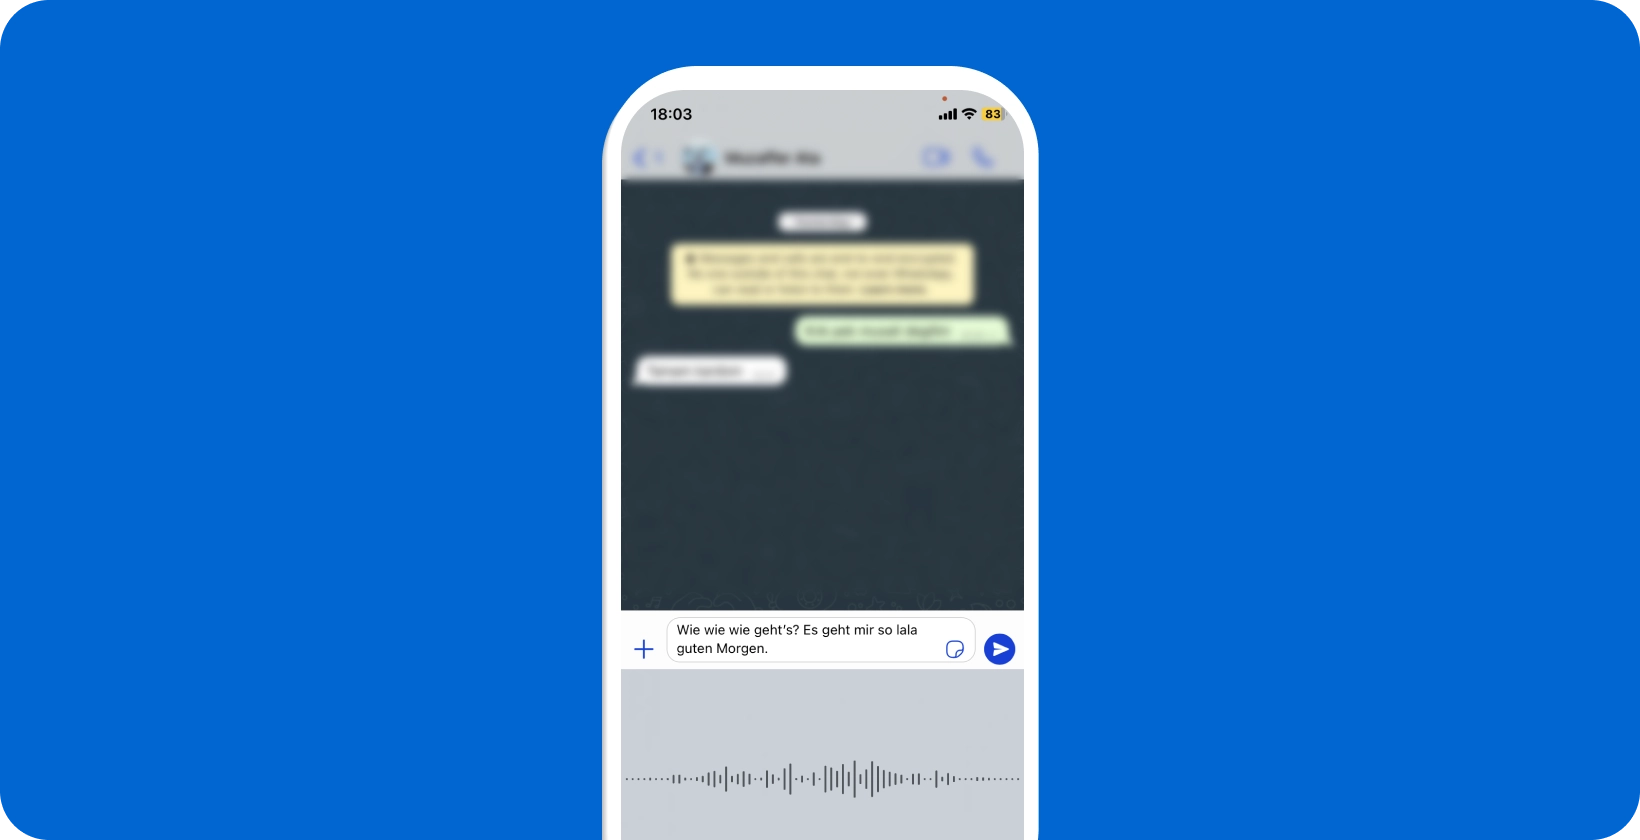 Smartphone mostrando WhatsApp ditado de voz em andamento, mostrando conversão de fala em texto em tempo real.